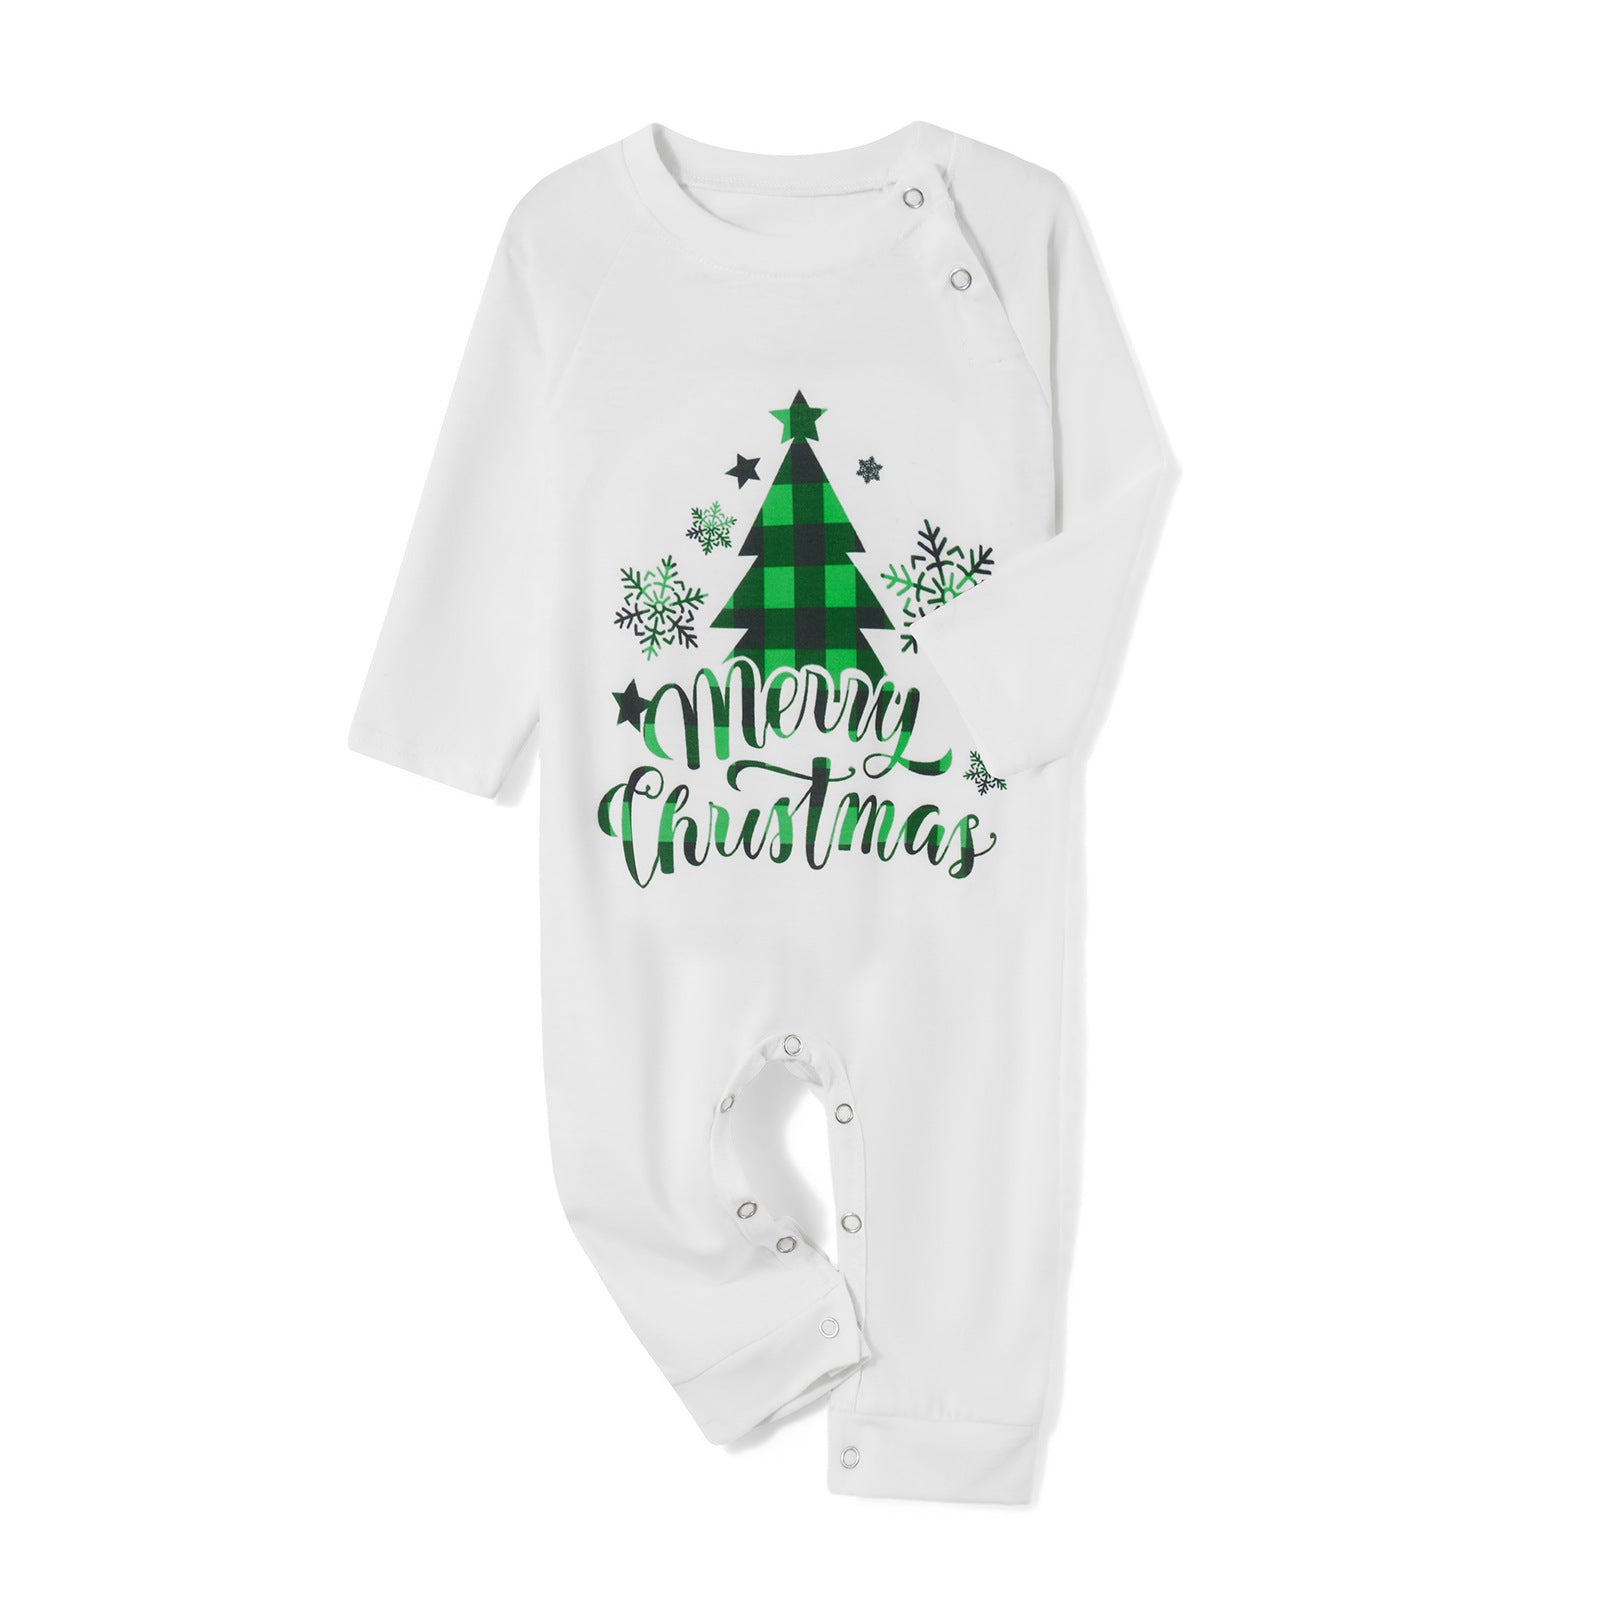 Family Christmas Parent-child Printed Loungewear Pajamas